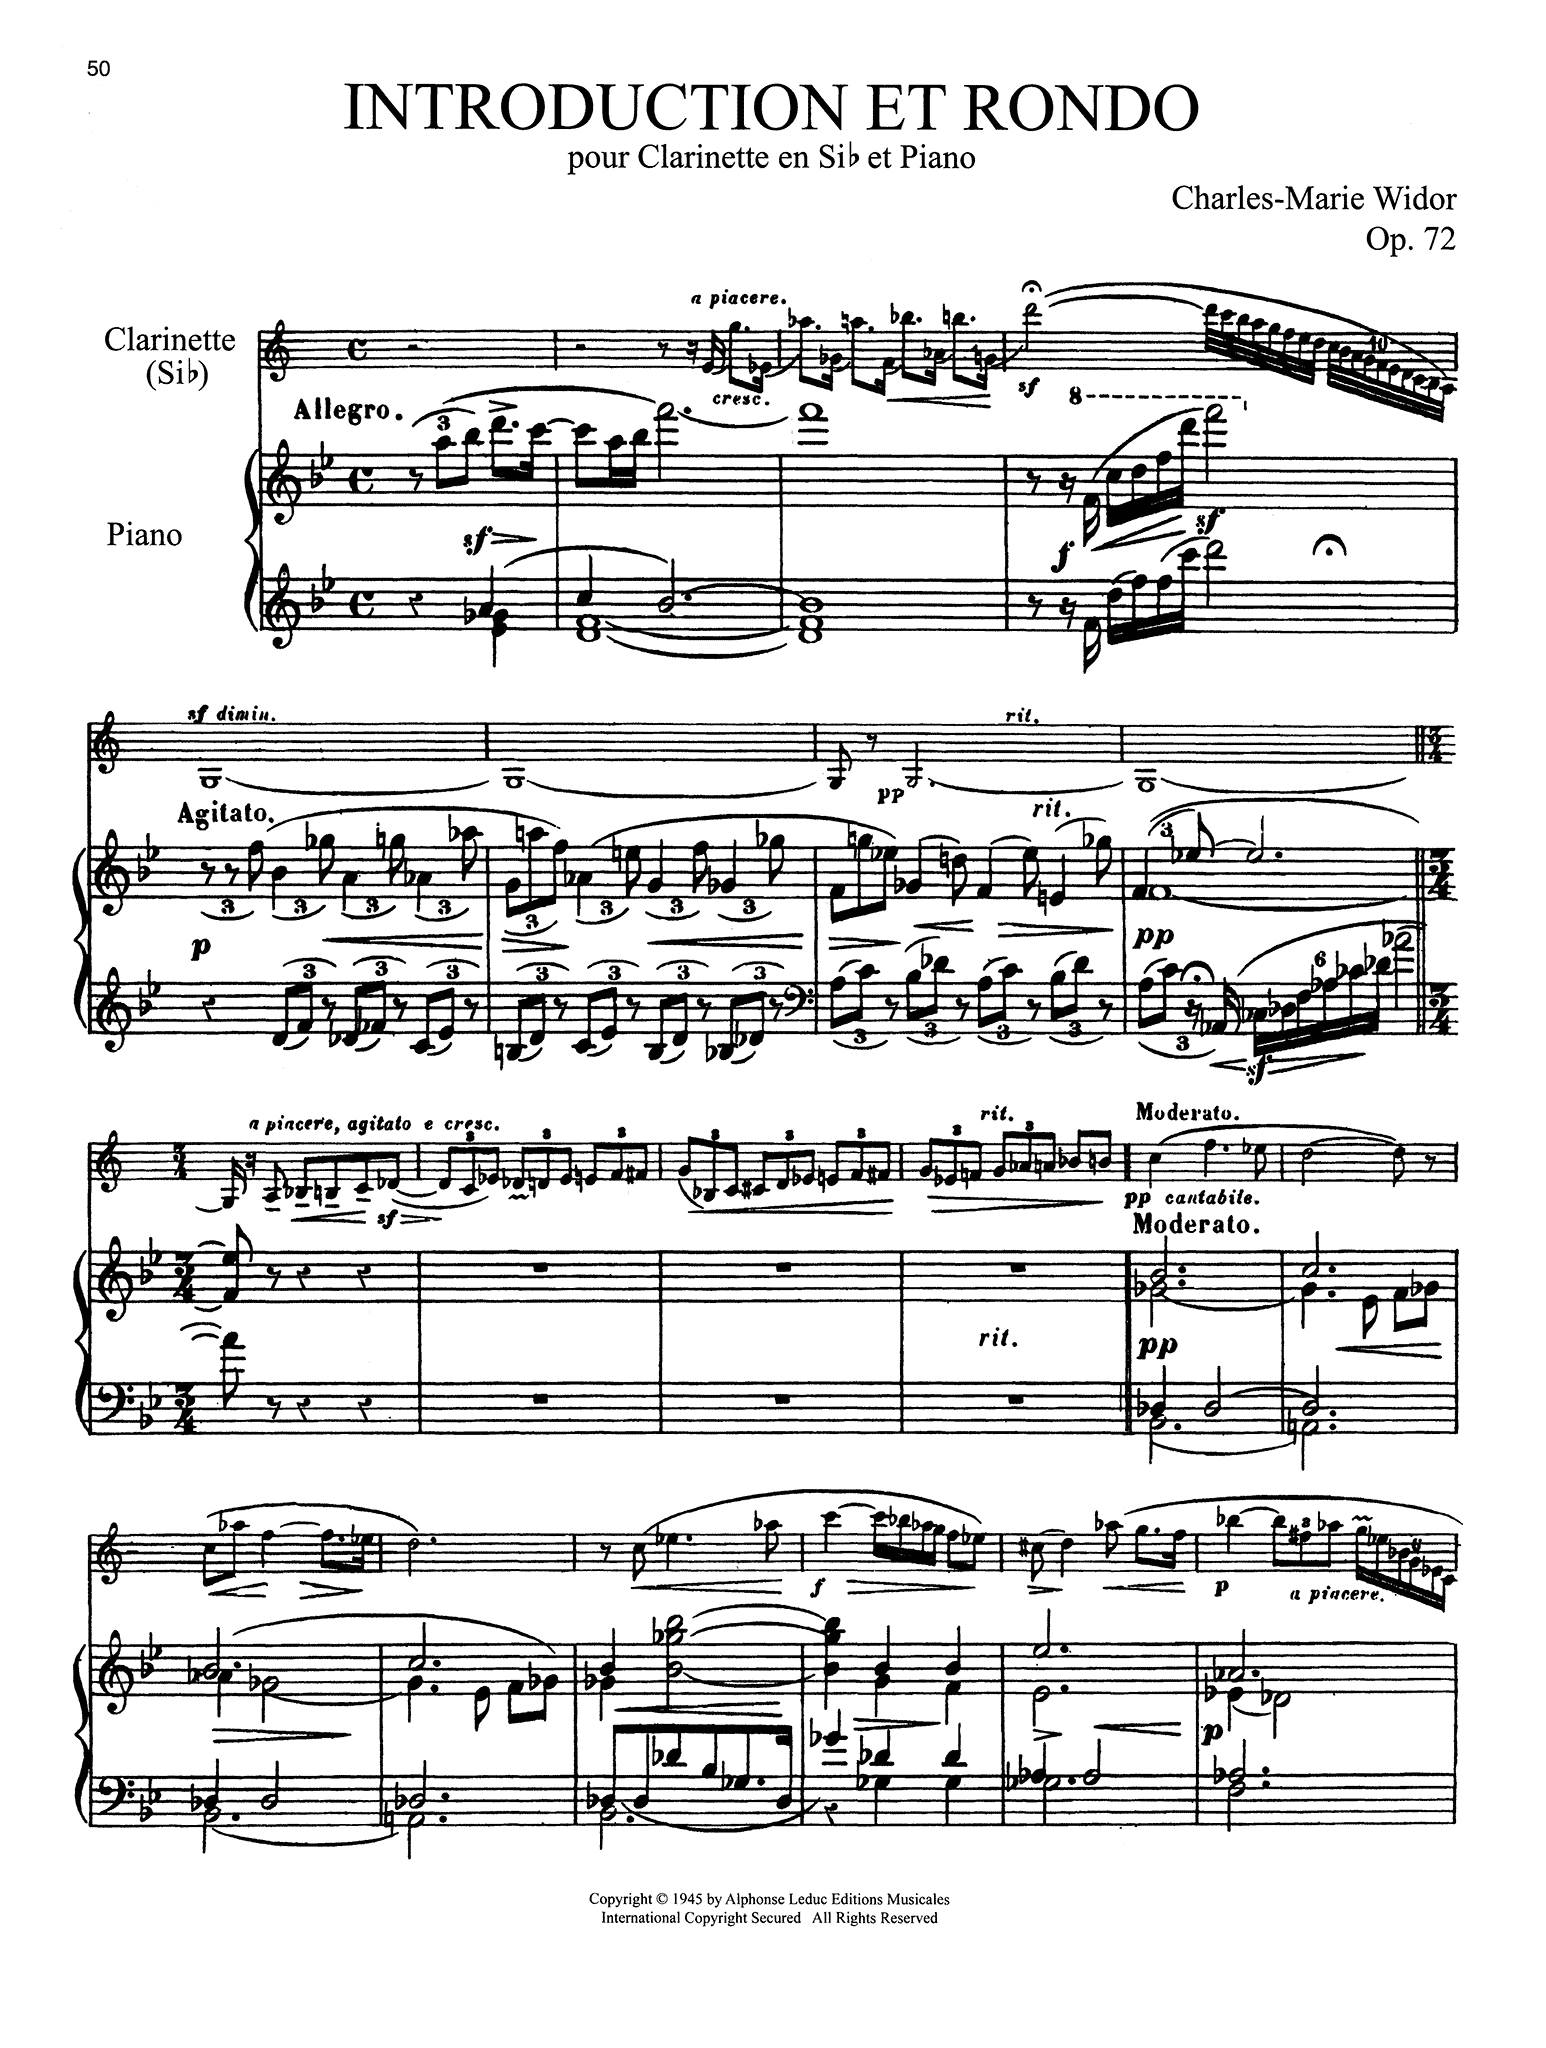 Widor Introduction et rondo op. 72  Score